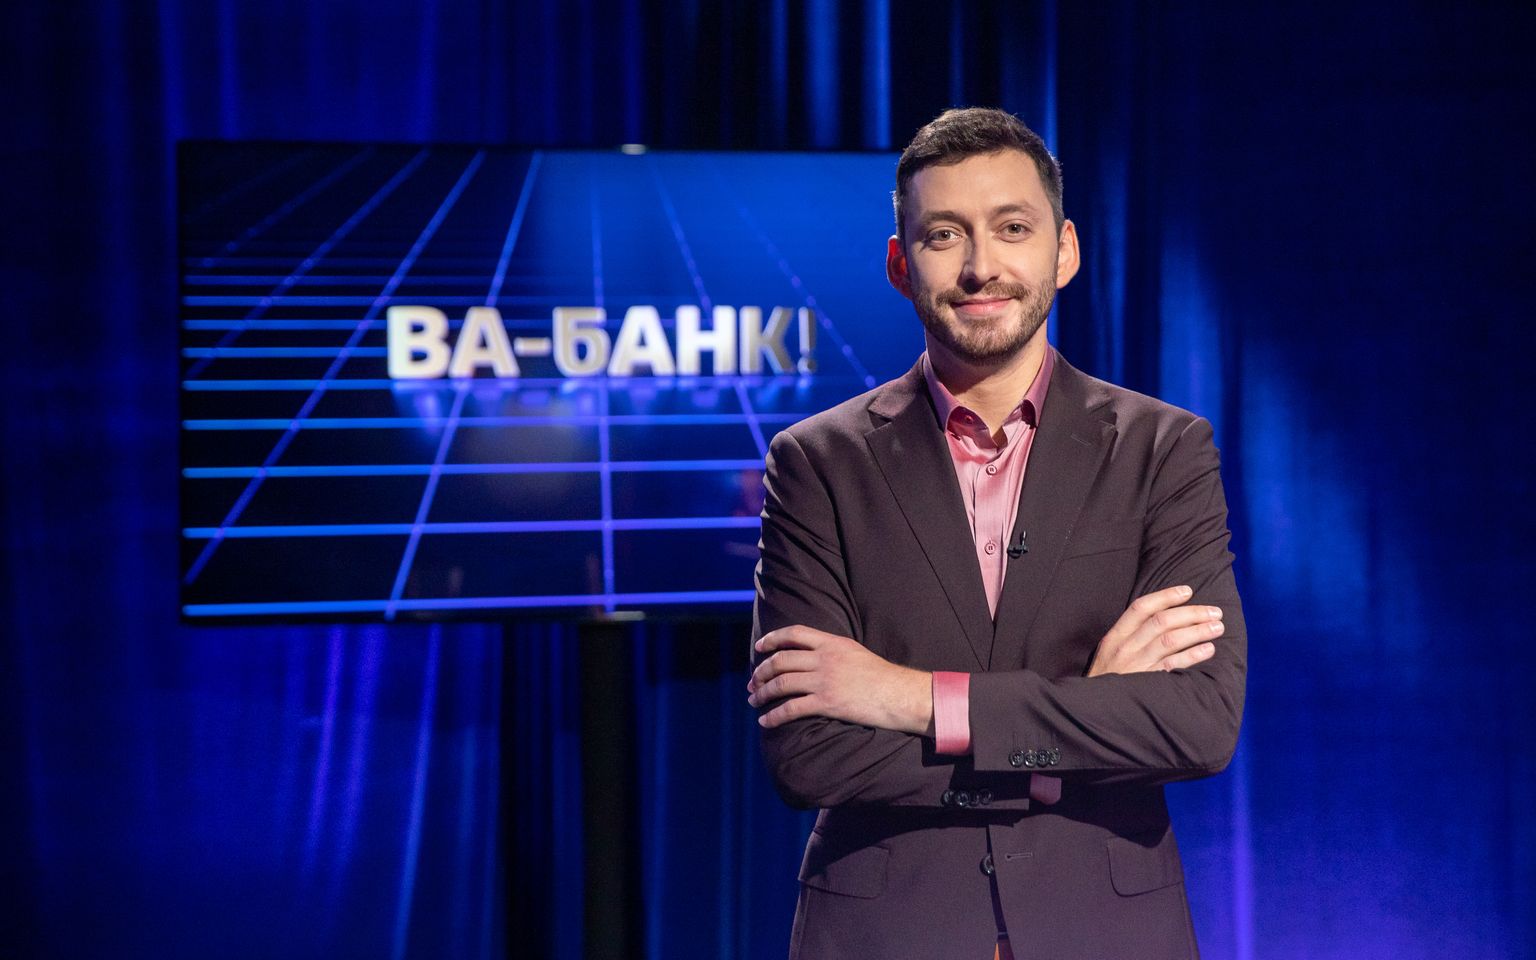 Ведущий интеллектуальной викторины «Ва-банк!» Александр Жиленко.